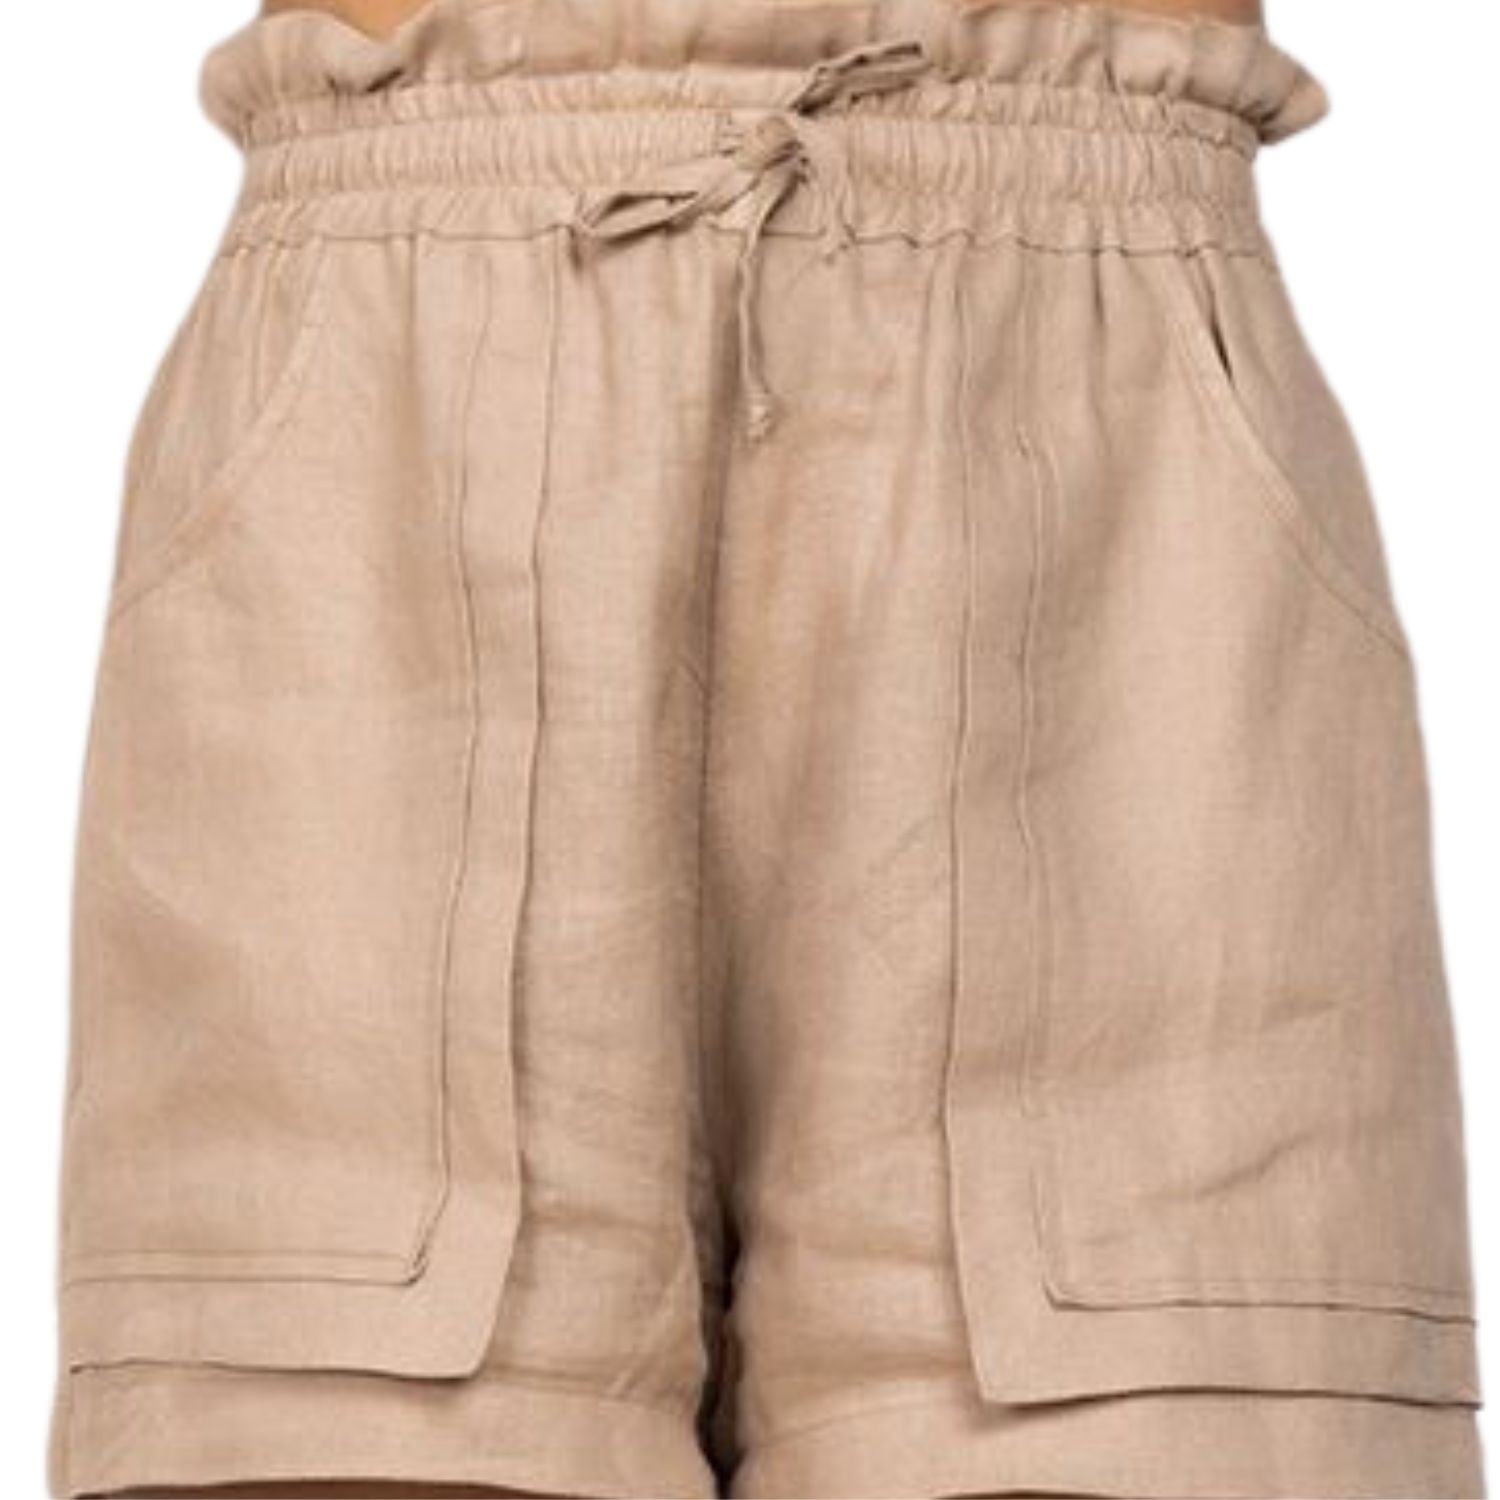 Cliche Reborn Women's Brown Beige Linen Shorts With Pockets